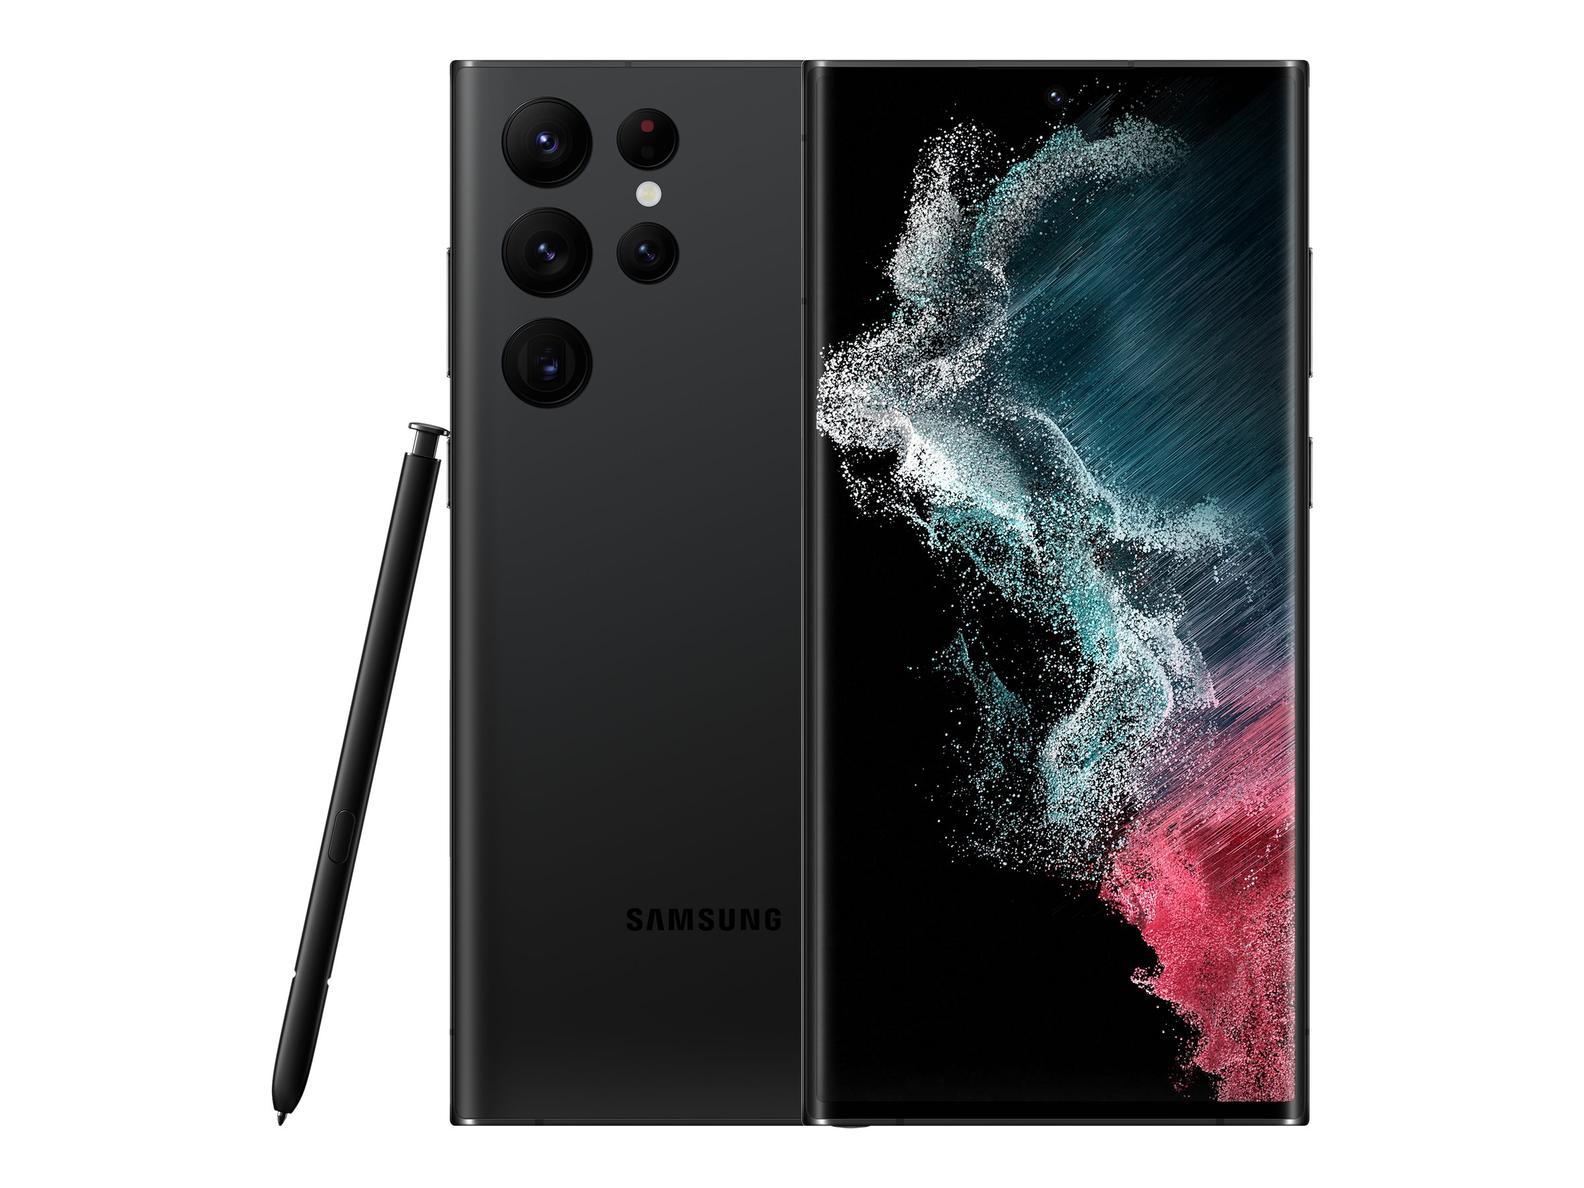 Tilbud: Samsung Galaxy S22 Ultra 5G 128GB, svart kr 11192 på Telenor